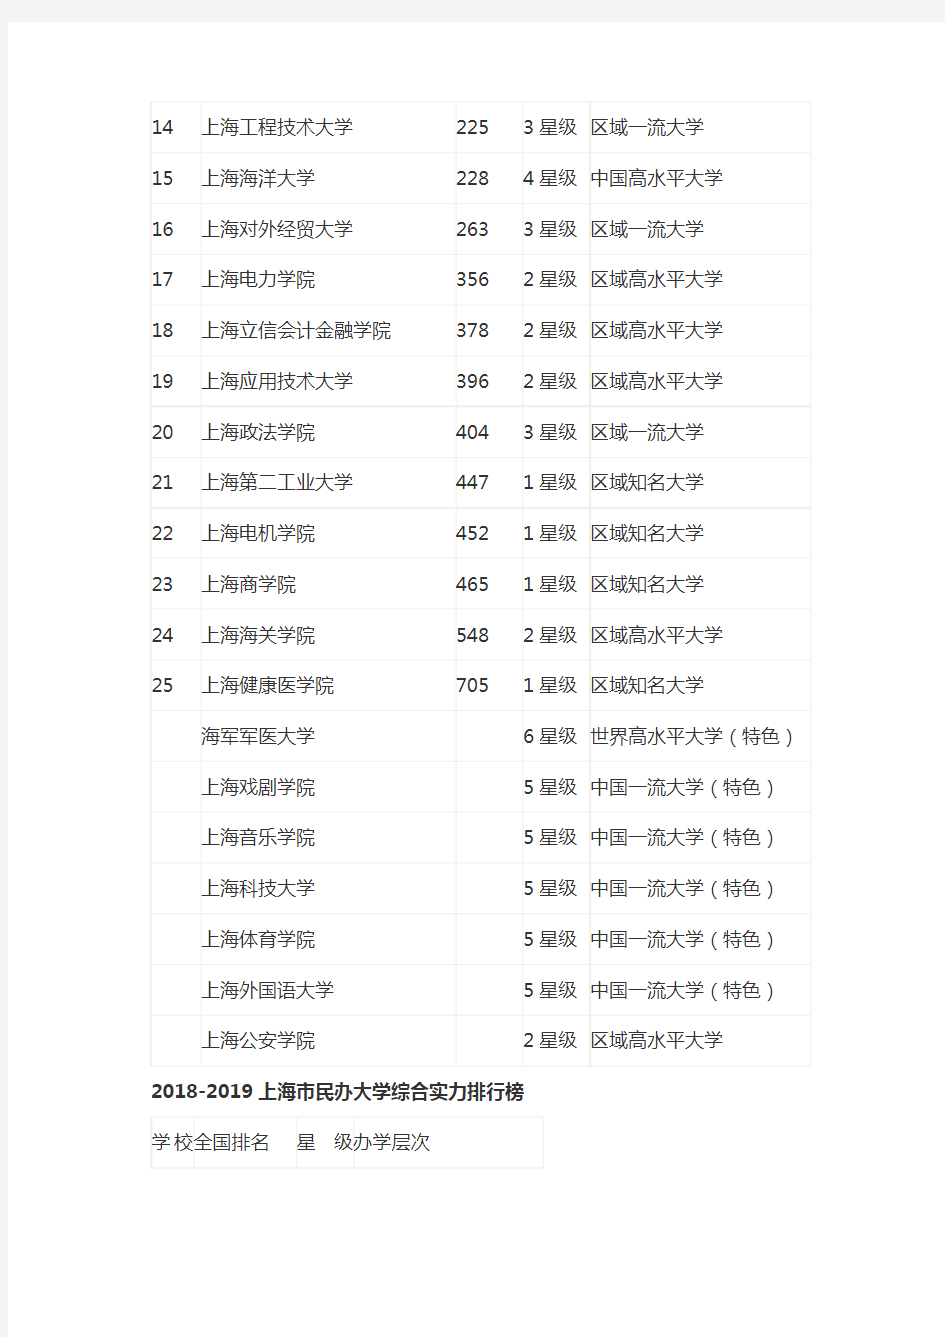 2018-2019上海市大学综合实力排行榜